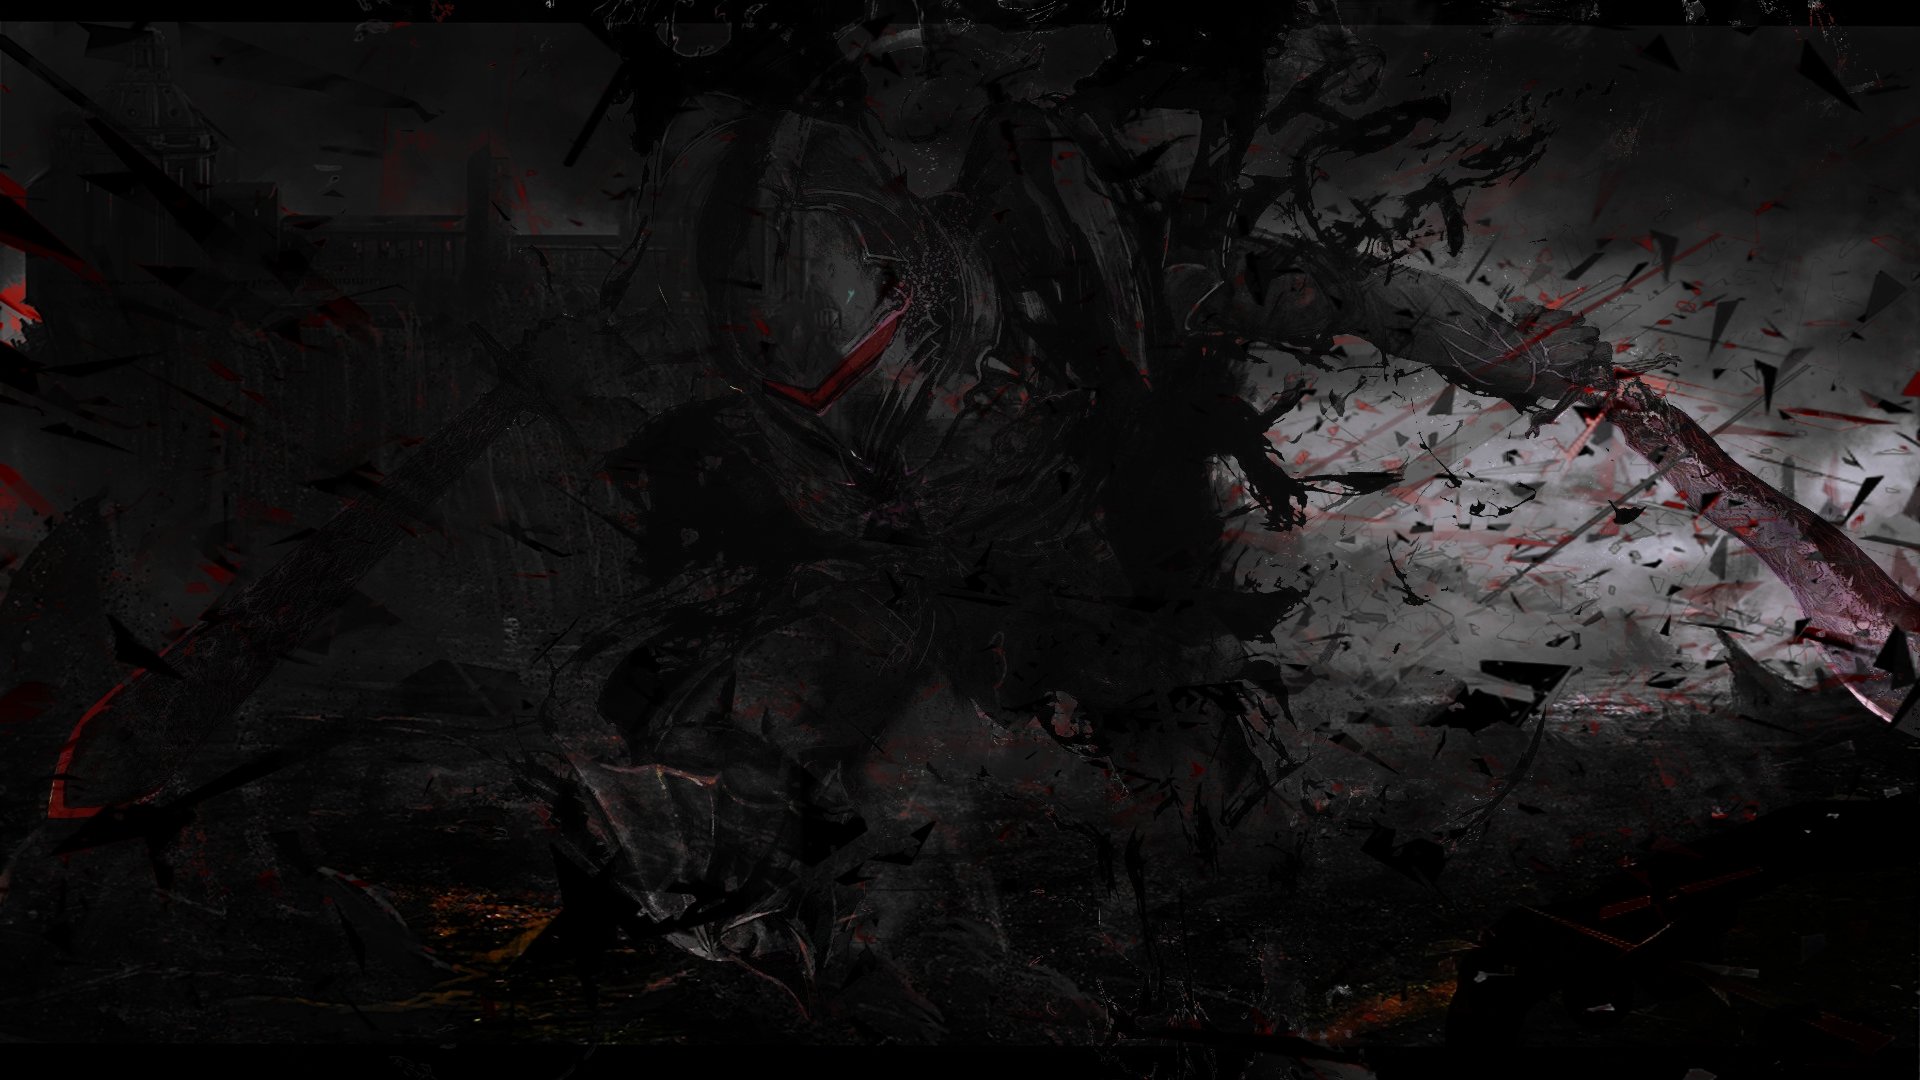 High resolution Berserker (Fate/Zero) 1080p wallpaper ID:87364 for desktop